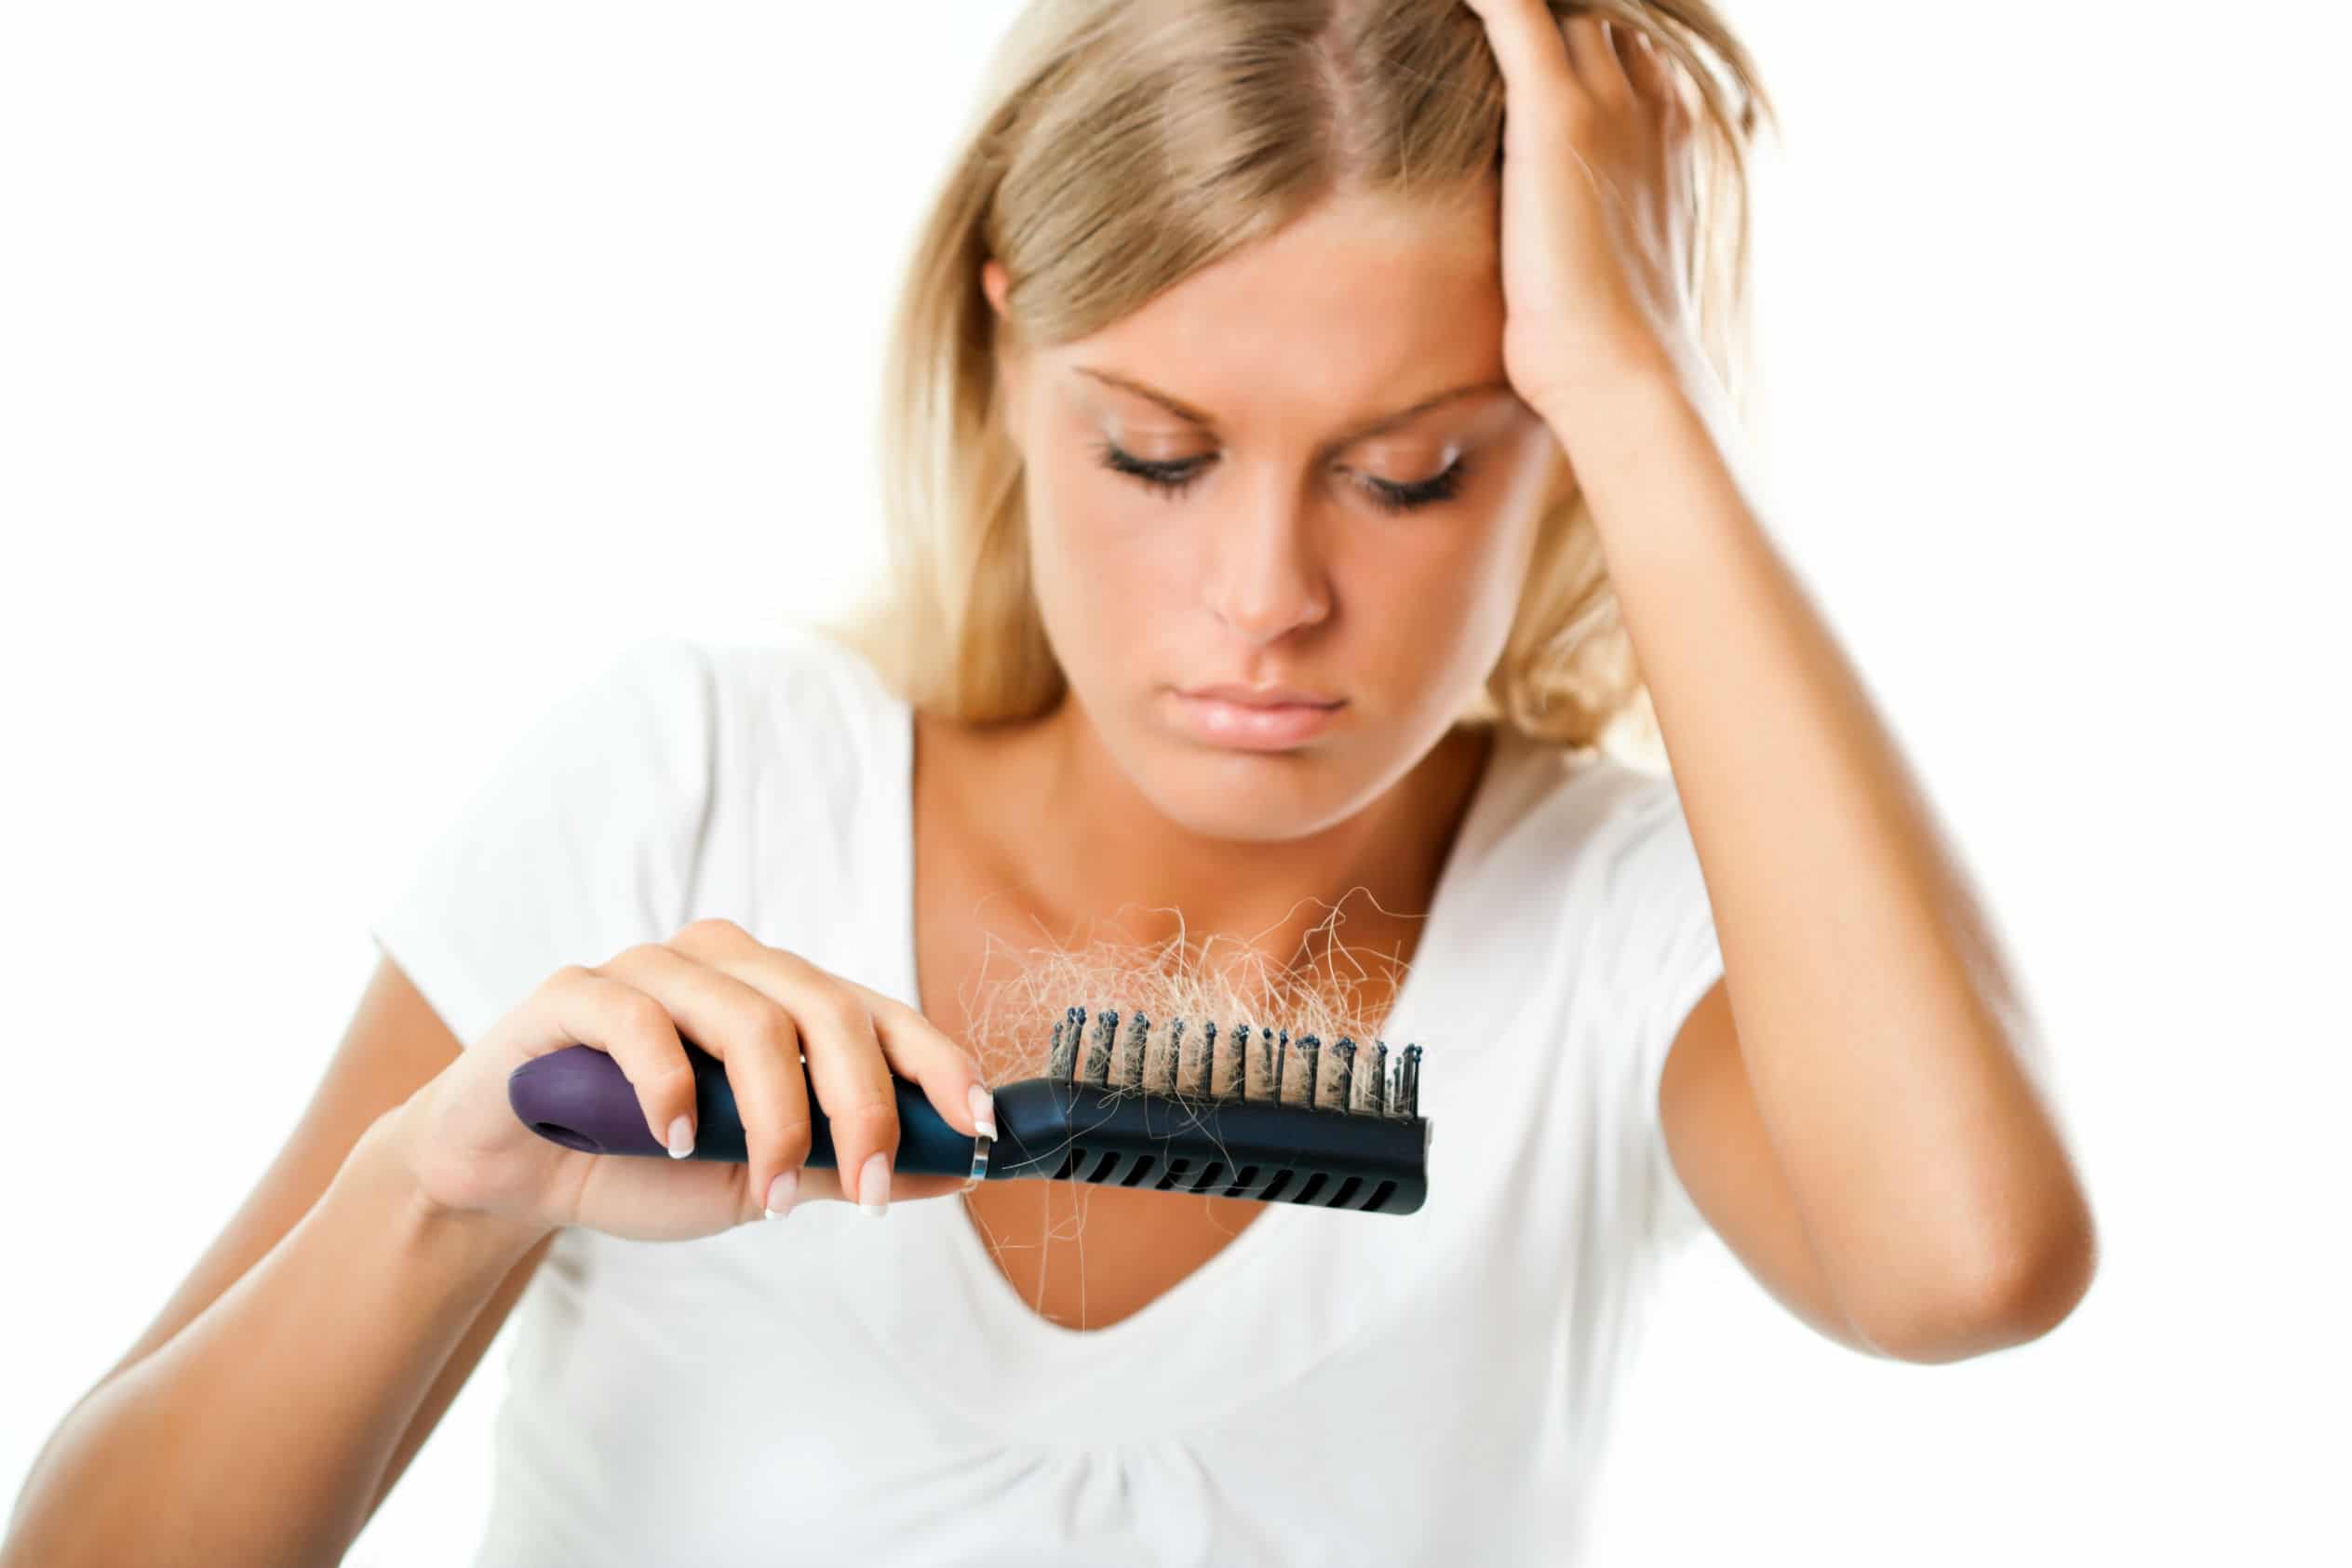 Female Pattern Baldness Treatment - Cure Hair Loss in Women